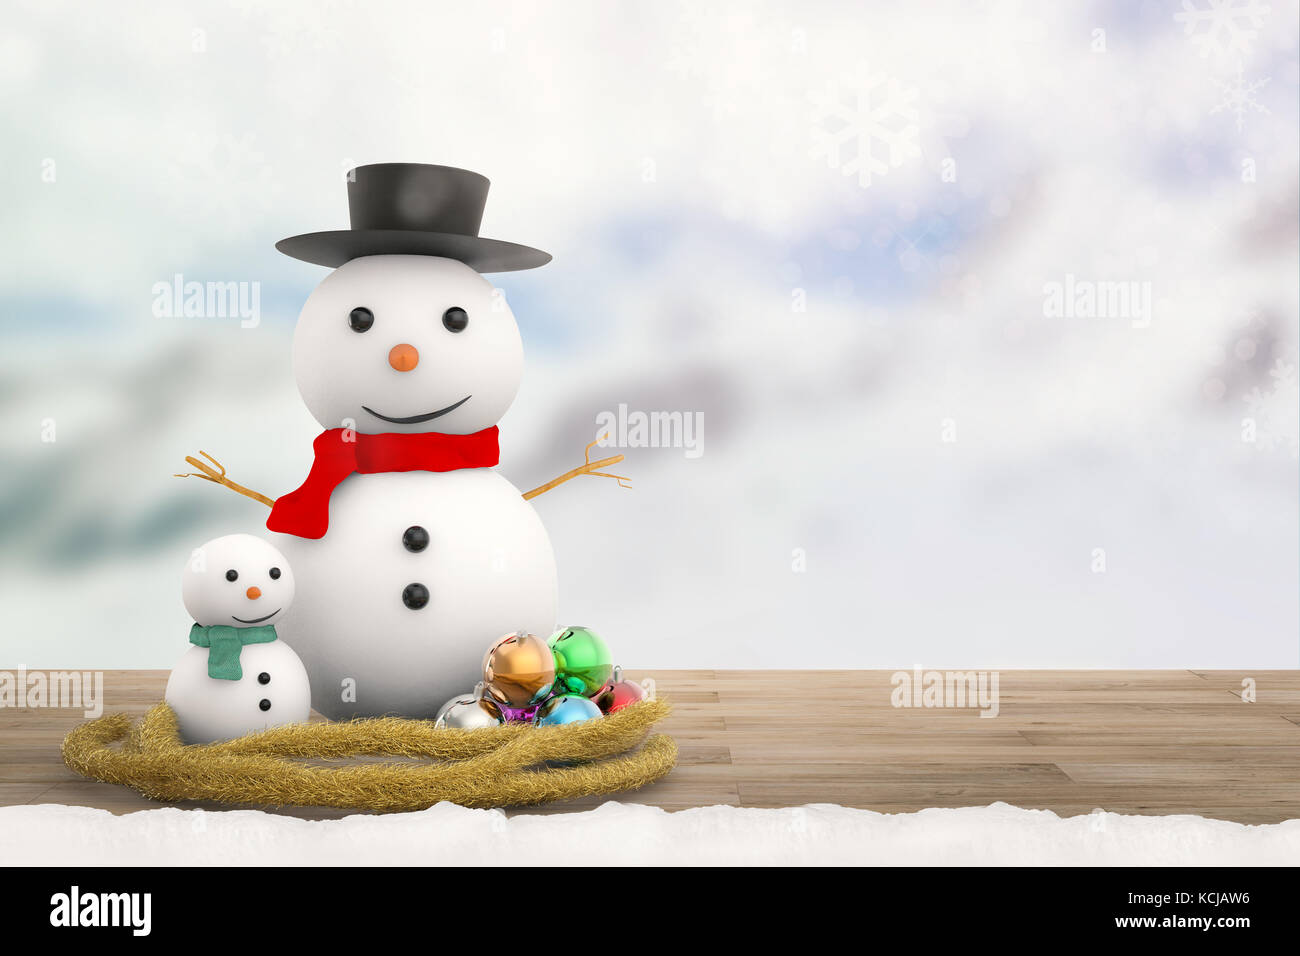 539,298 Snowman Images, Stock Photos, 3D objects, & Vectors